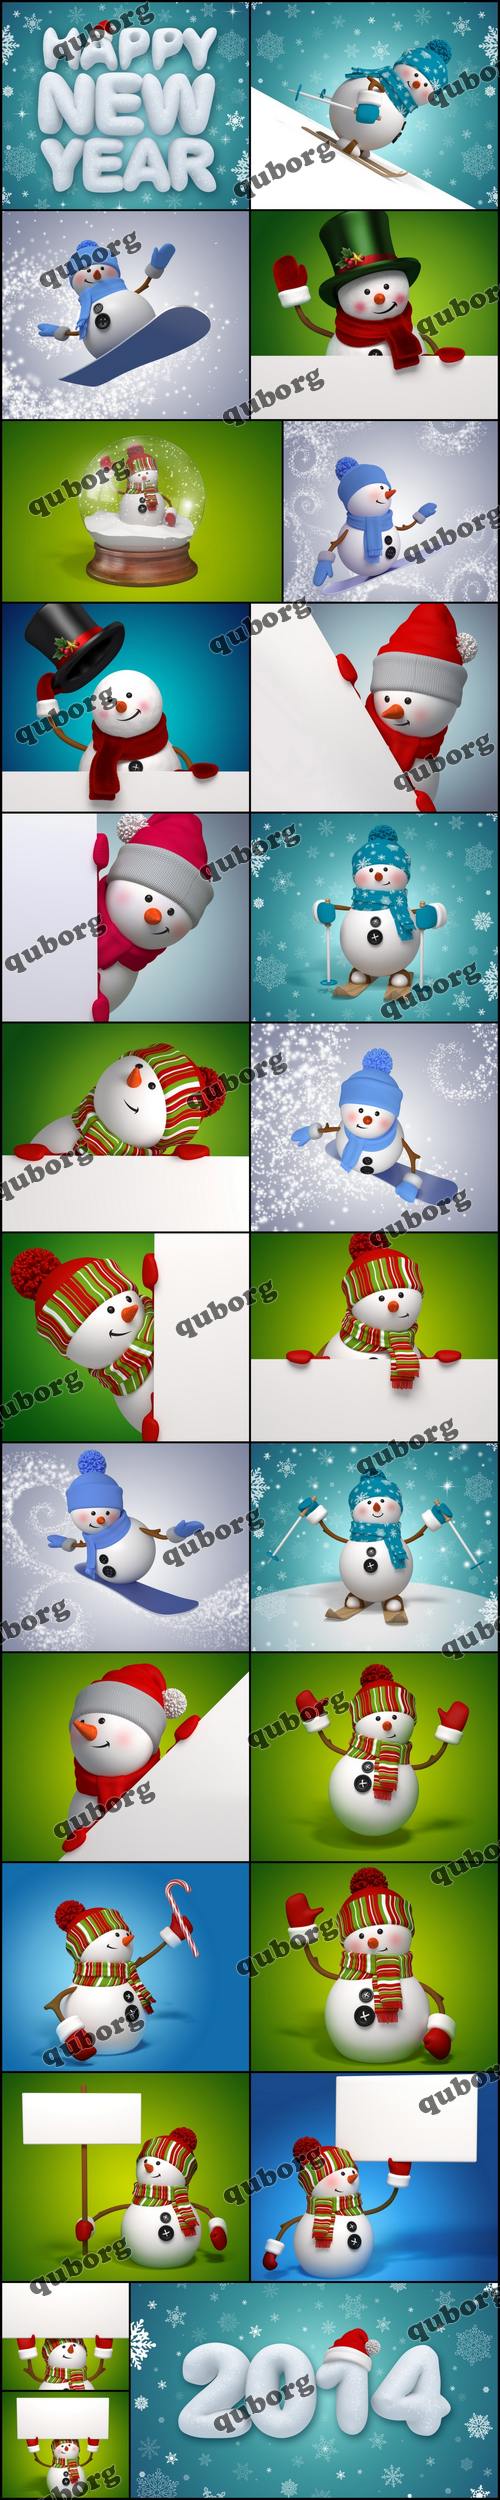 Stock Photos - 3D Snowman and Christmas